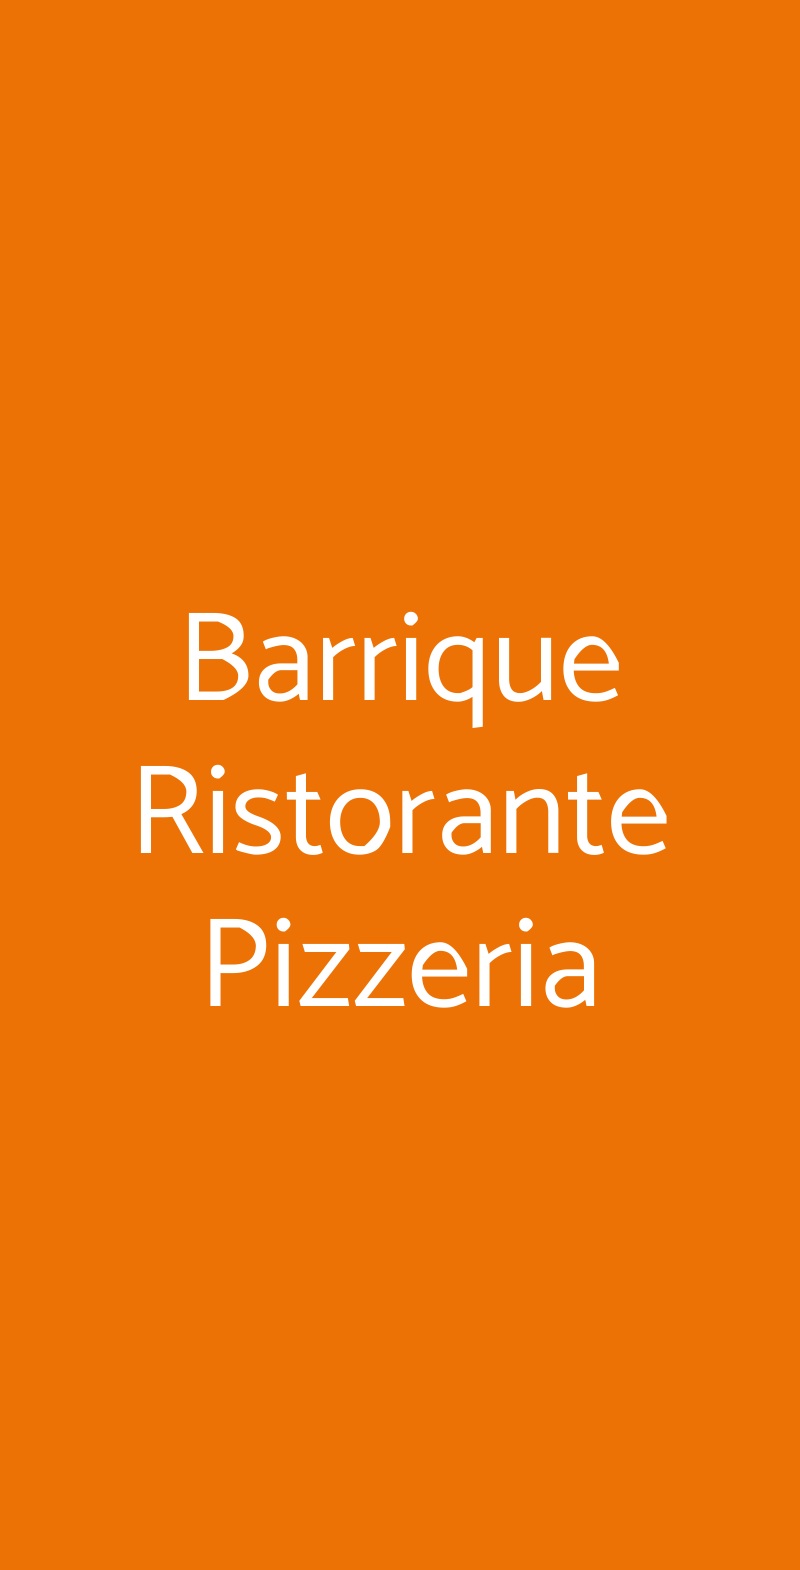 Barrique Ristorante Pizzeria Roma menù 1 pagina